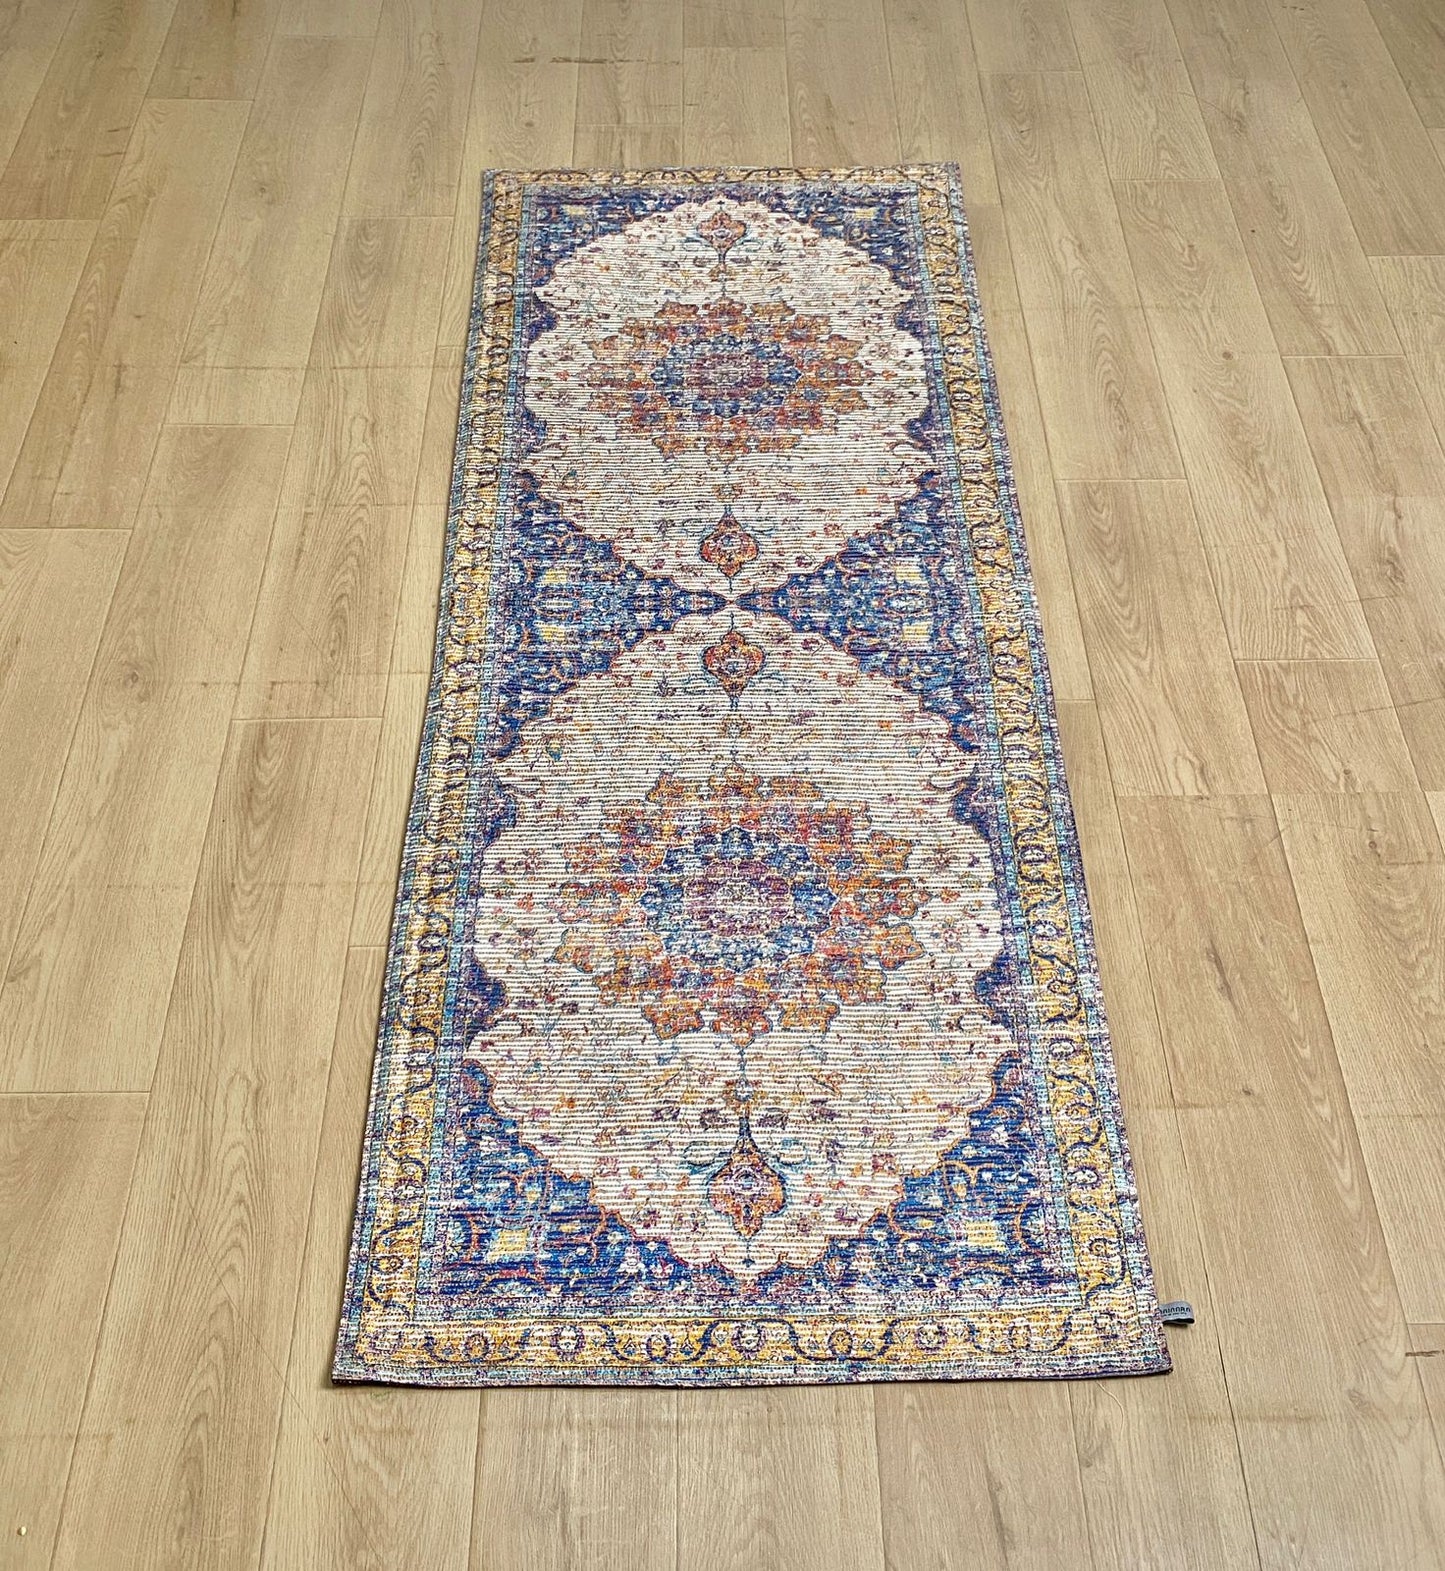 Karpet Tradisional (YL-T-0022) - Yellow,Blue